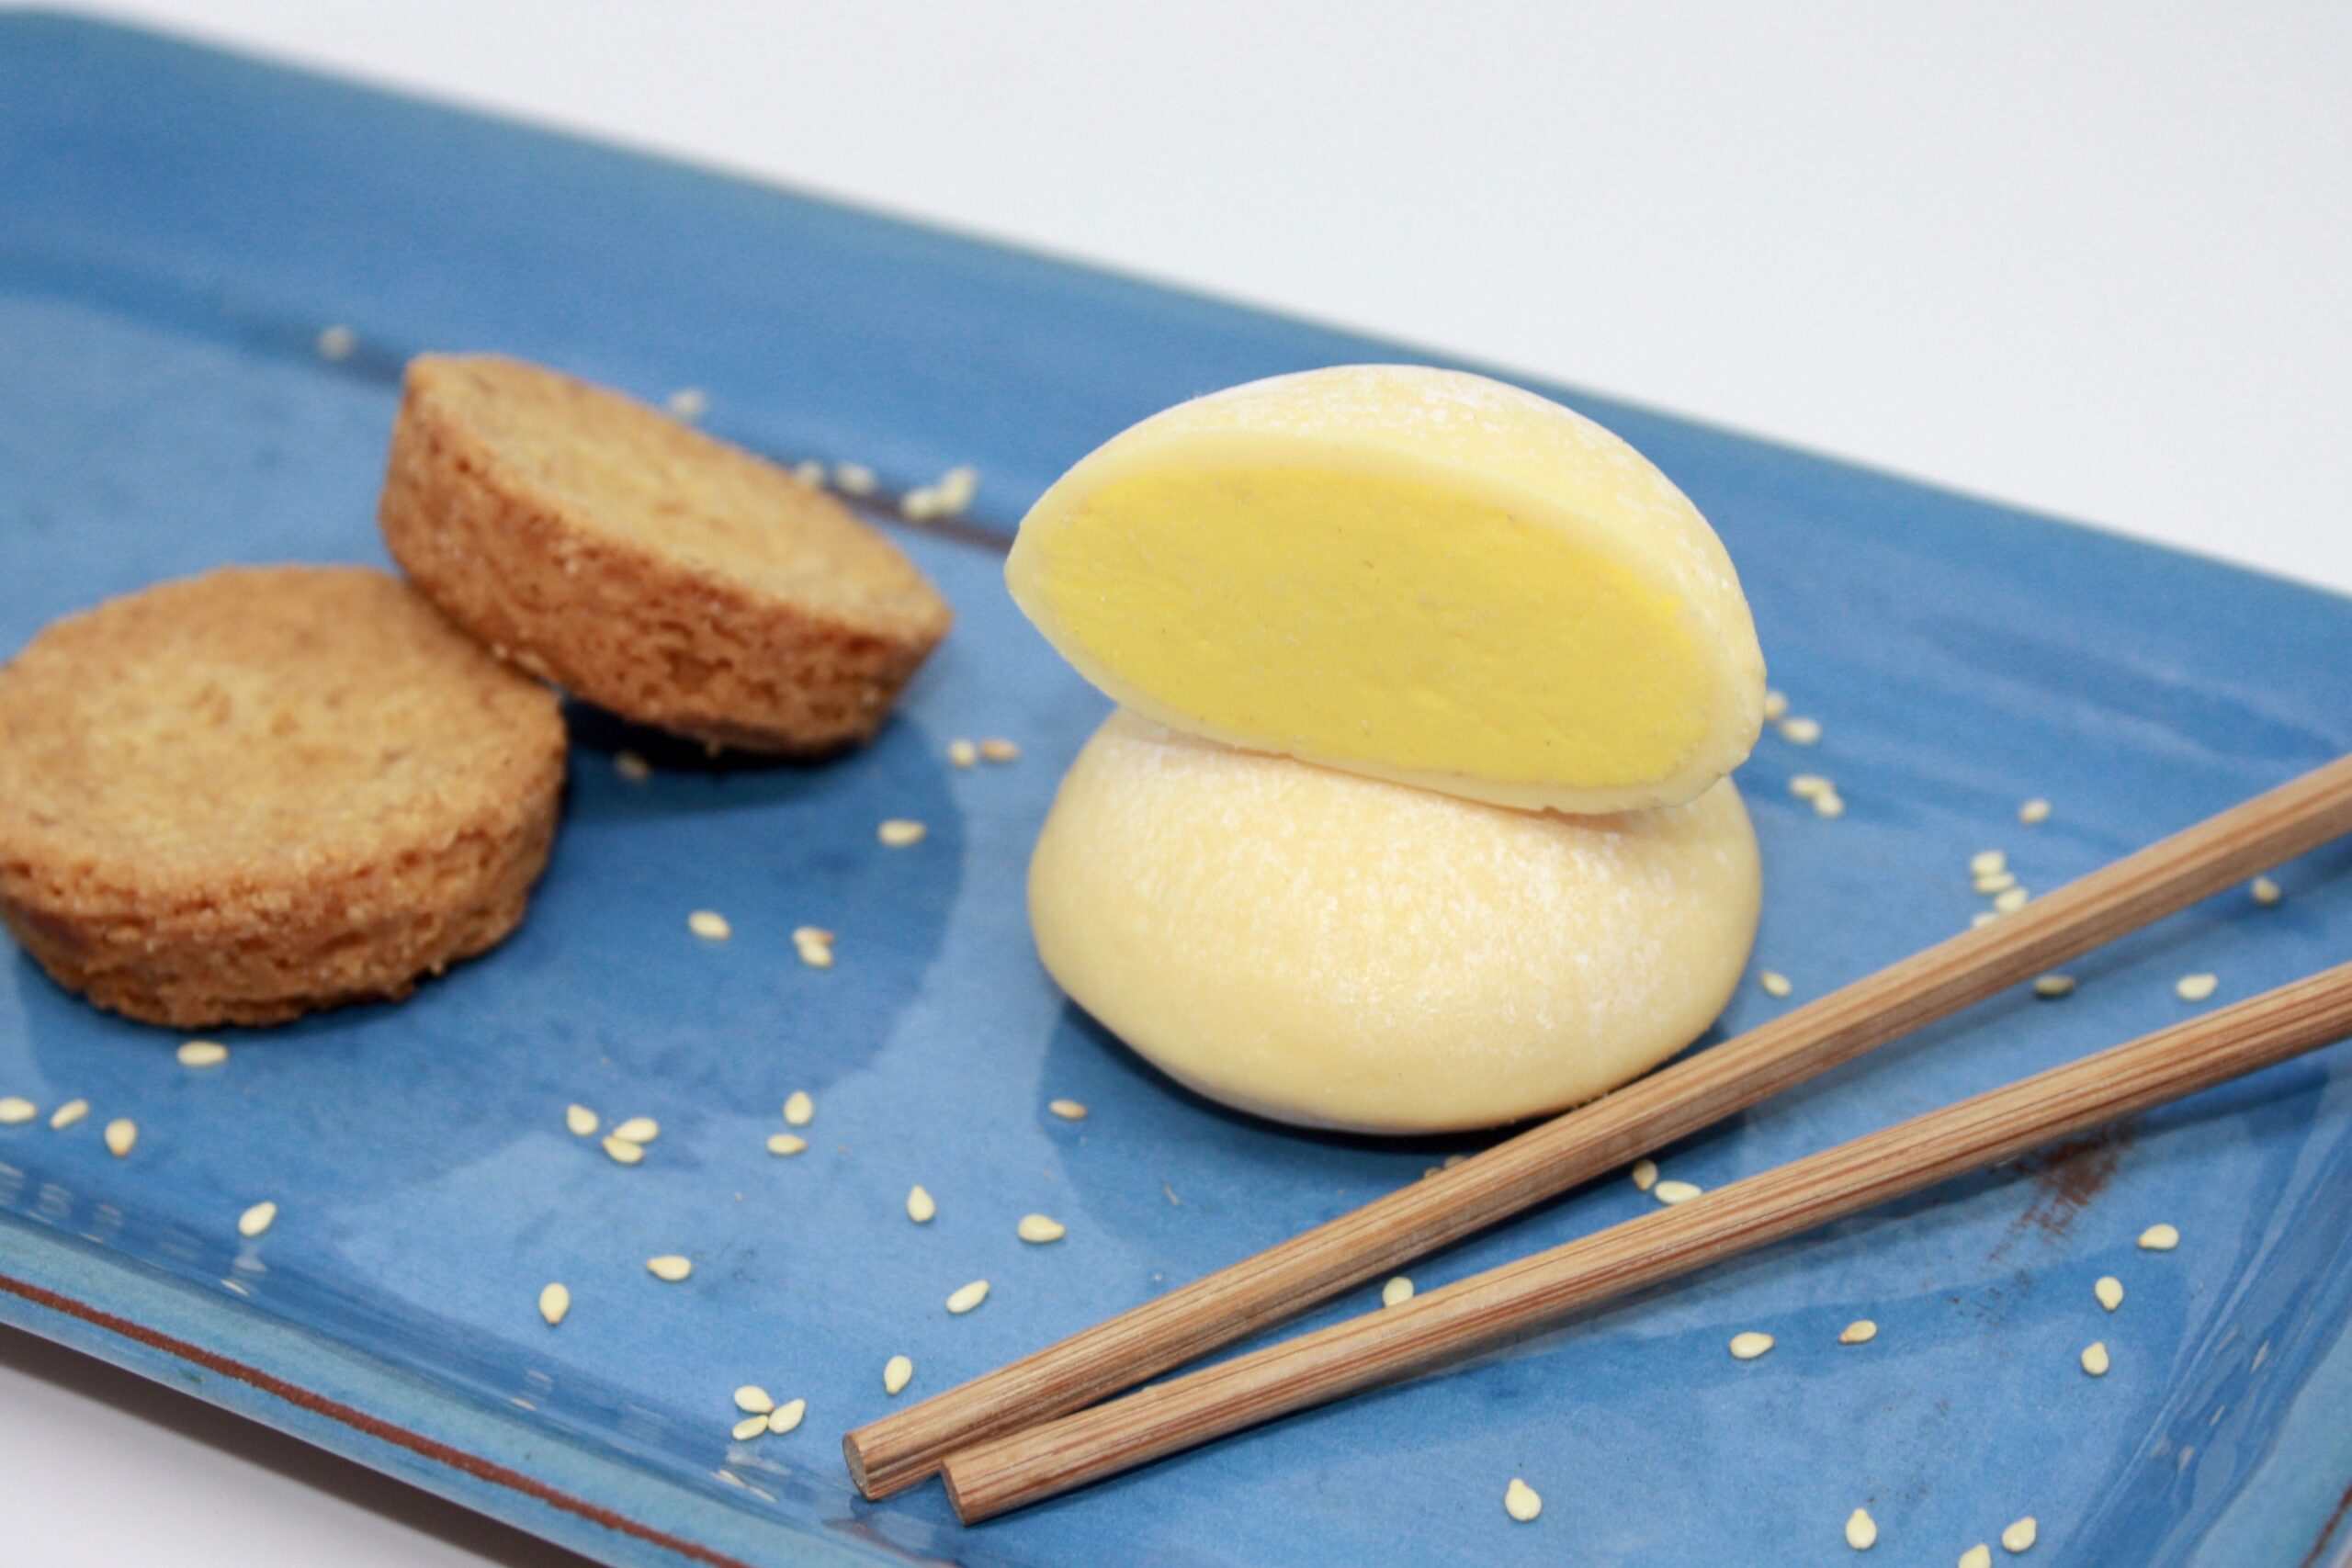 Atelier mochi : dessert Japonais - Tiliz, Créateur français de mochis glacés